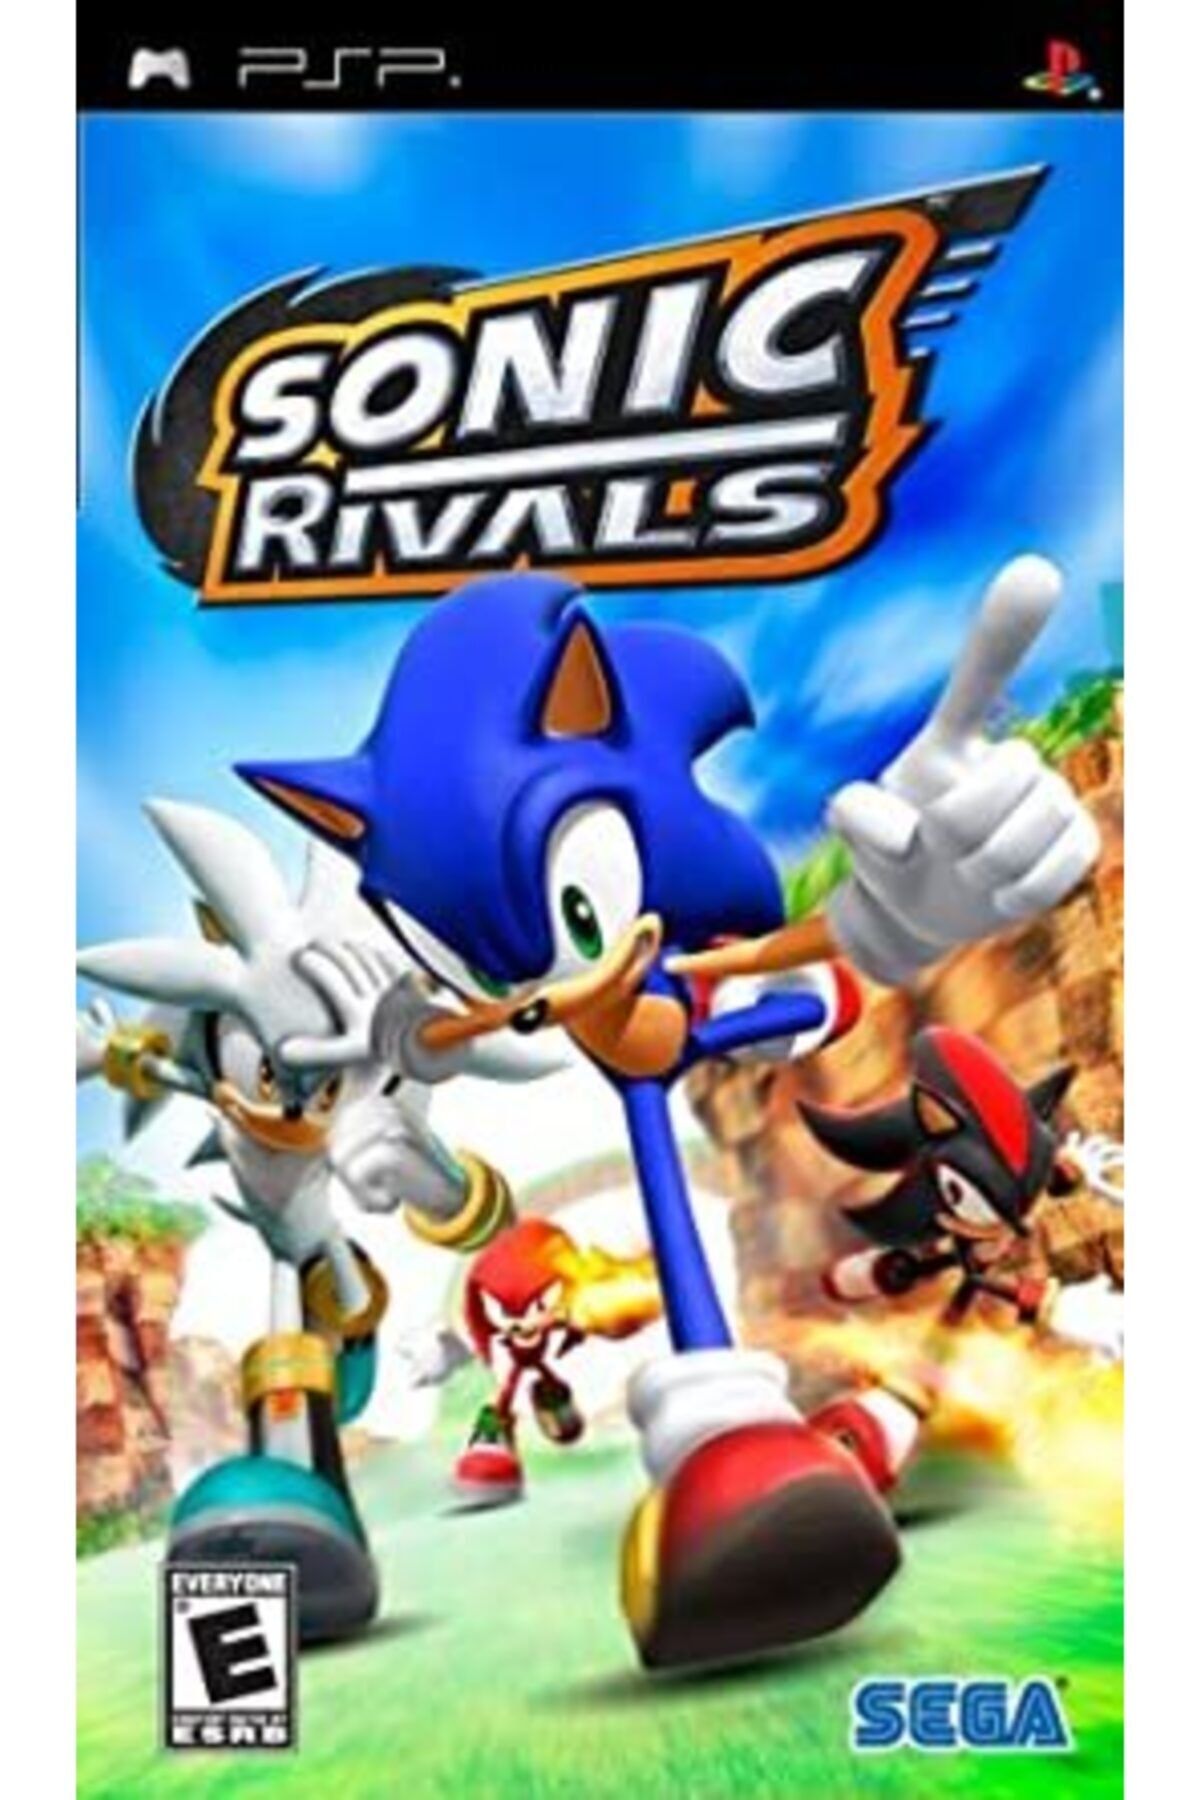 SEGA Psp Sonic Rivals Essentials Gameplay